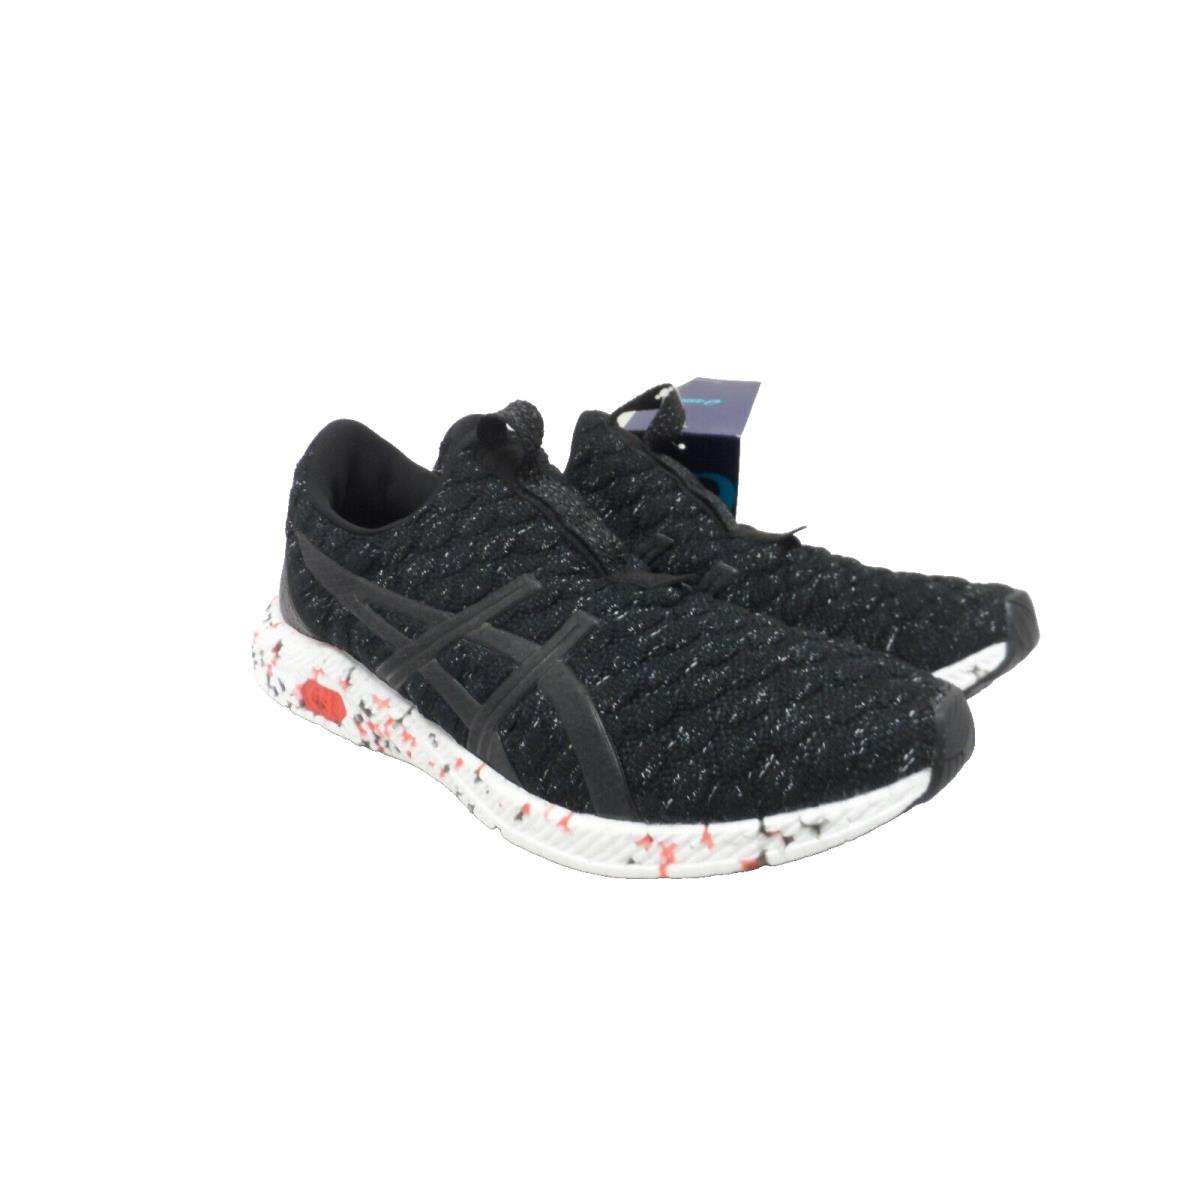 Asics Men`s Hypergel - Kenzen Athletic Running Sneakers Black/red Size 8.5M